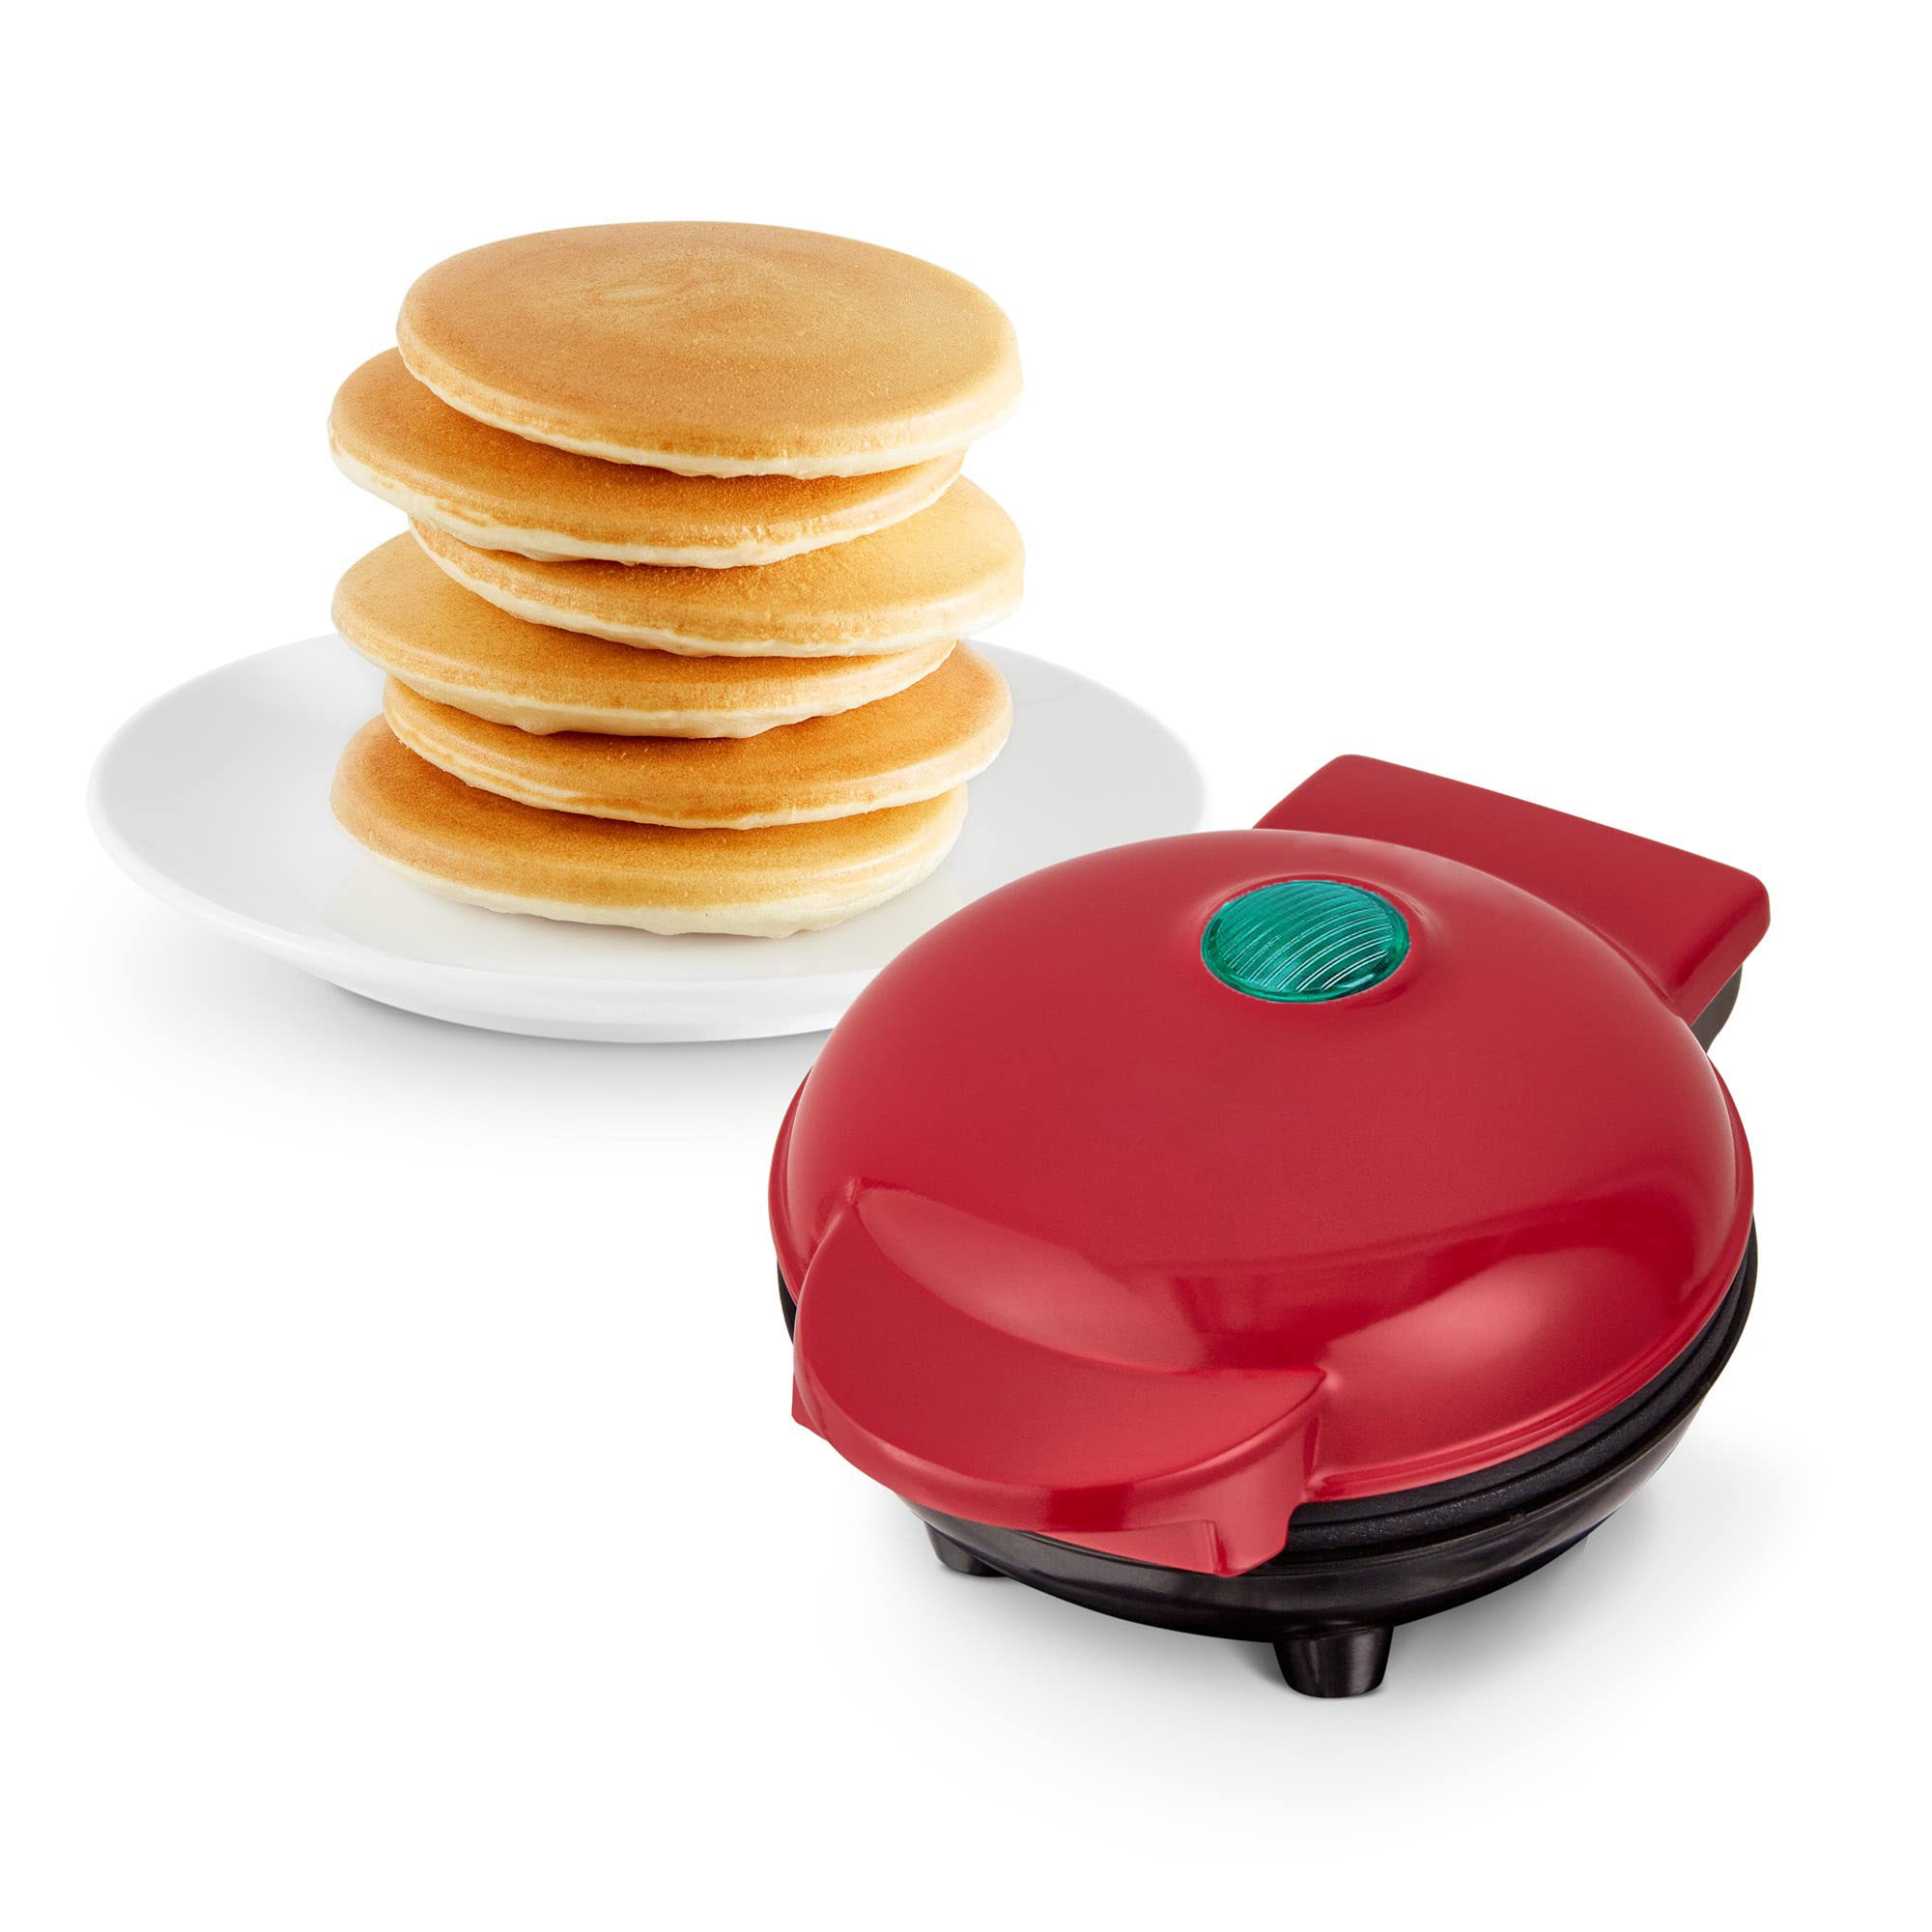 Plancha antiadherente perfecta para tus mini pancakes, prepara